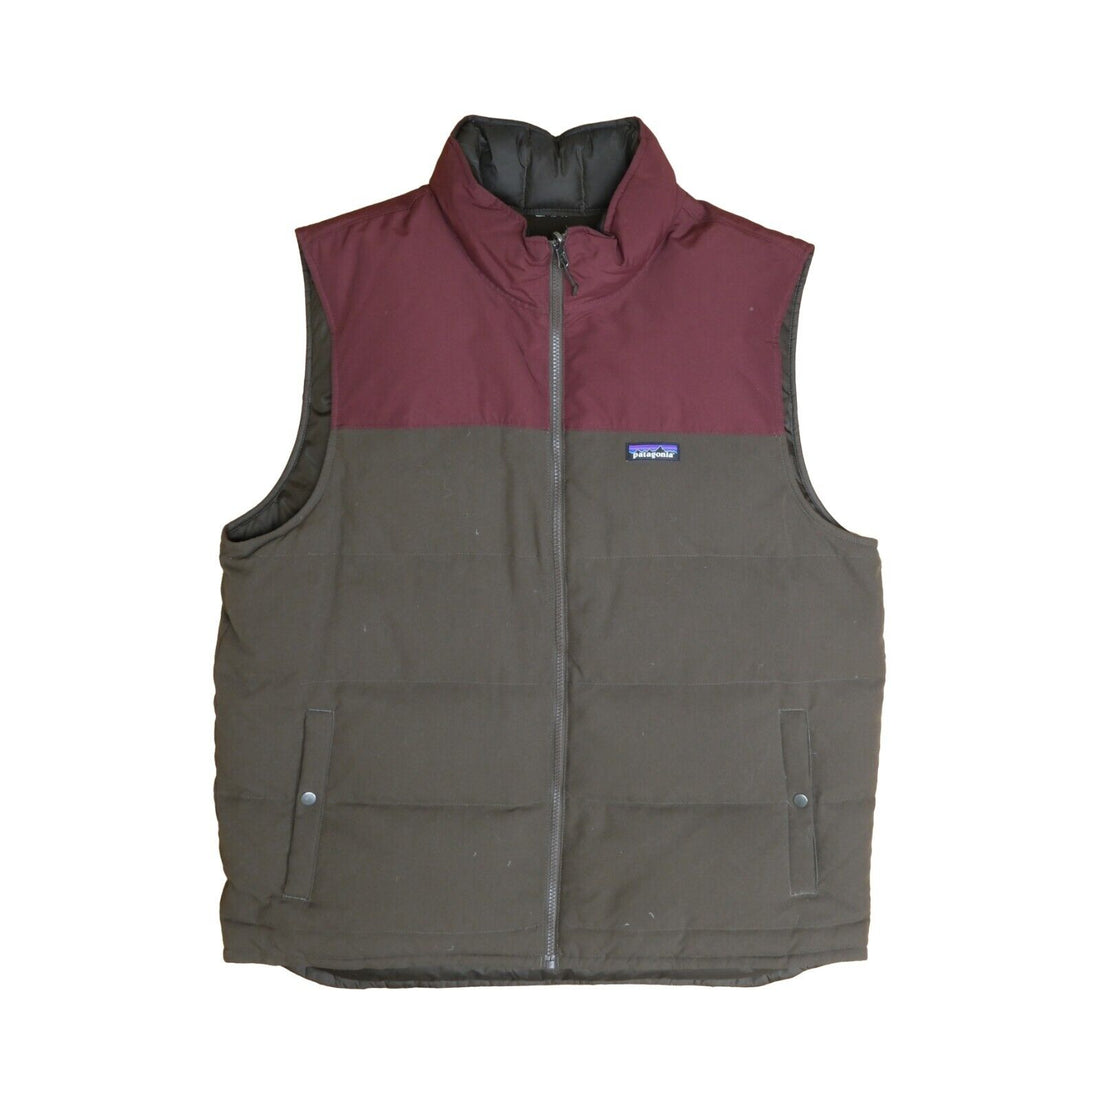 Patagonia puffer jacket size large